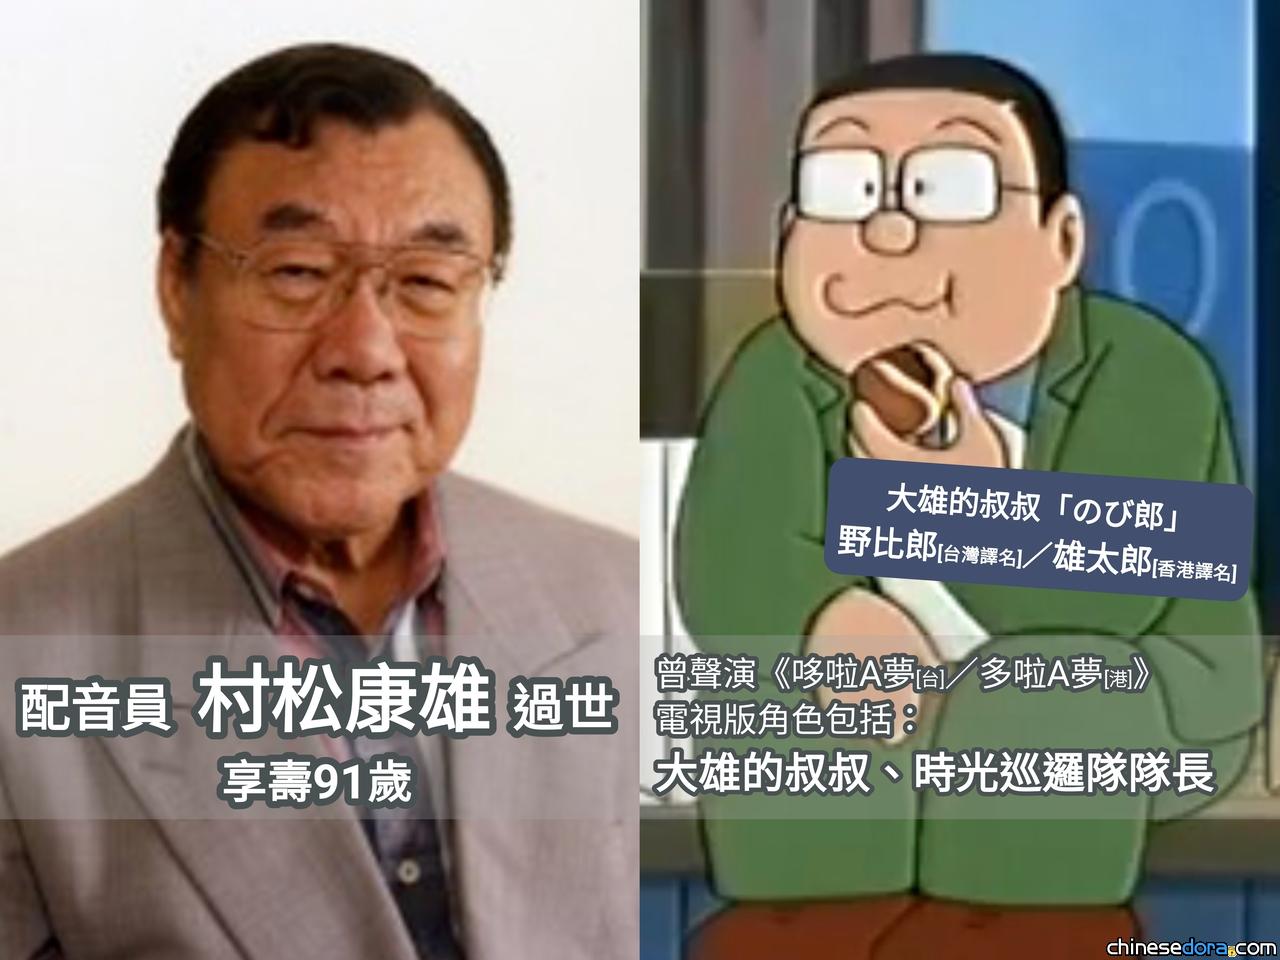 [日本] 《哆啦A夢》動畫「野比郎叔叔」配音員村松康雄過世 享壽91歲